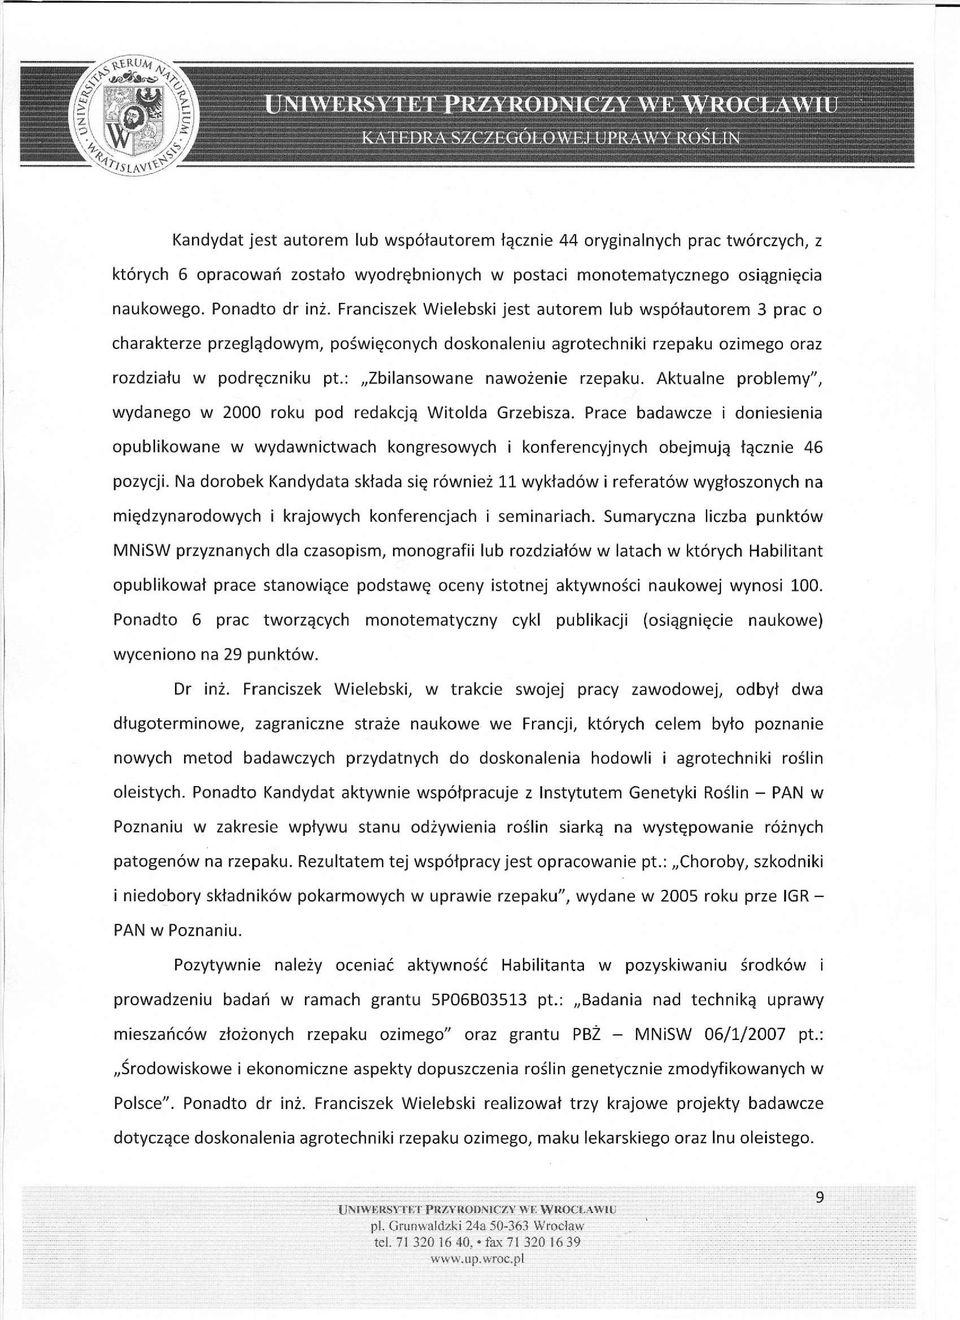 : Zbilansowane nawożenie rzepaku. Aktualne problemy", wydanego w 2000 roku pod redakcją Witolda Grzebisza.